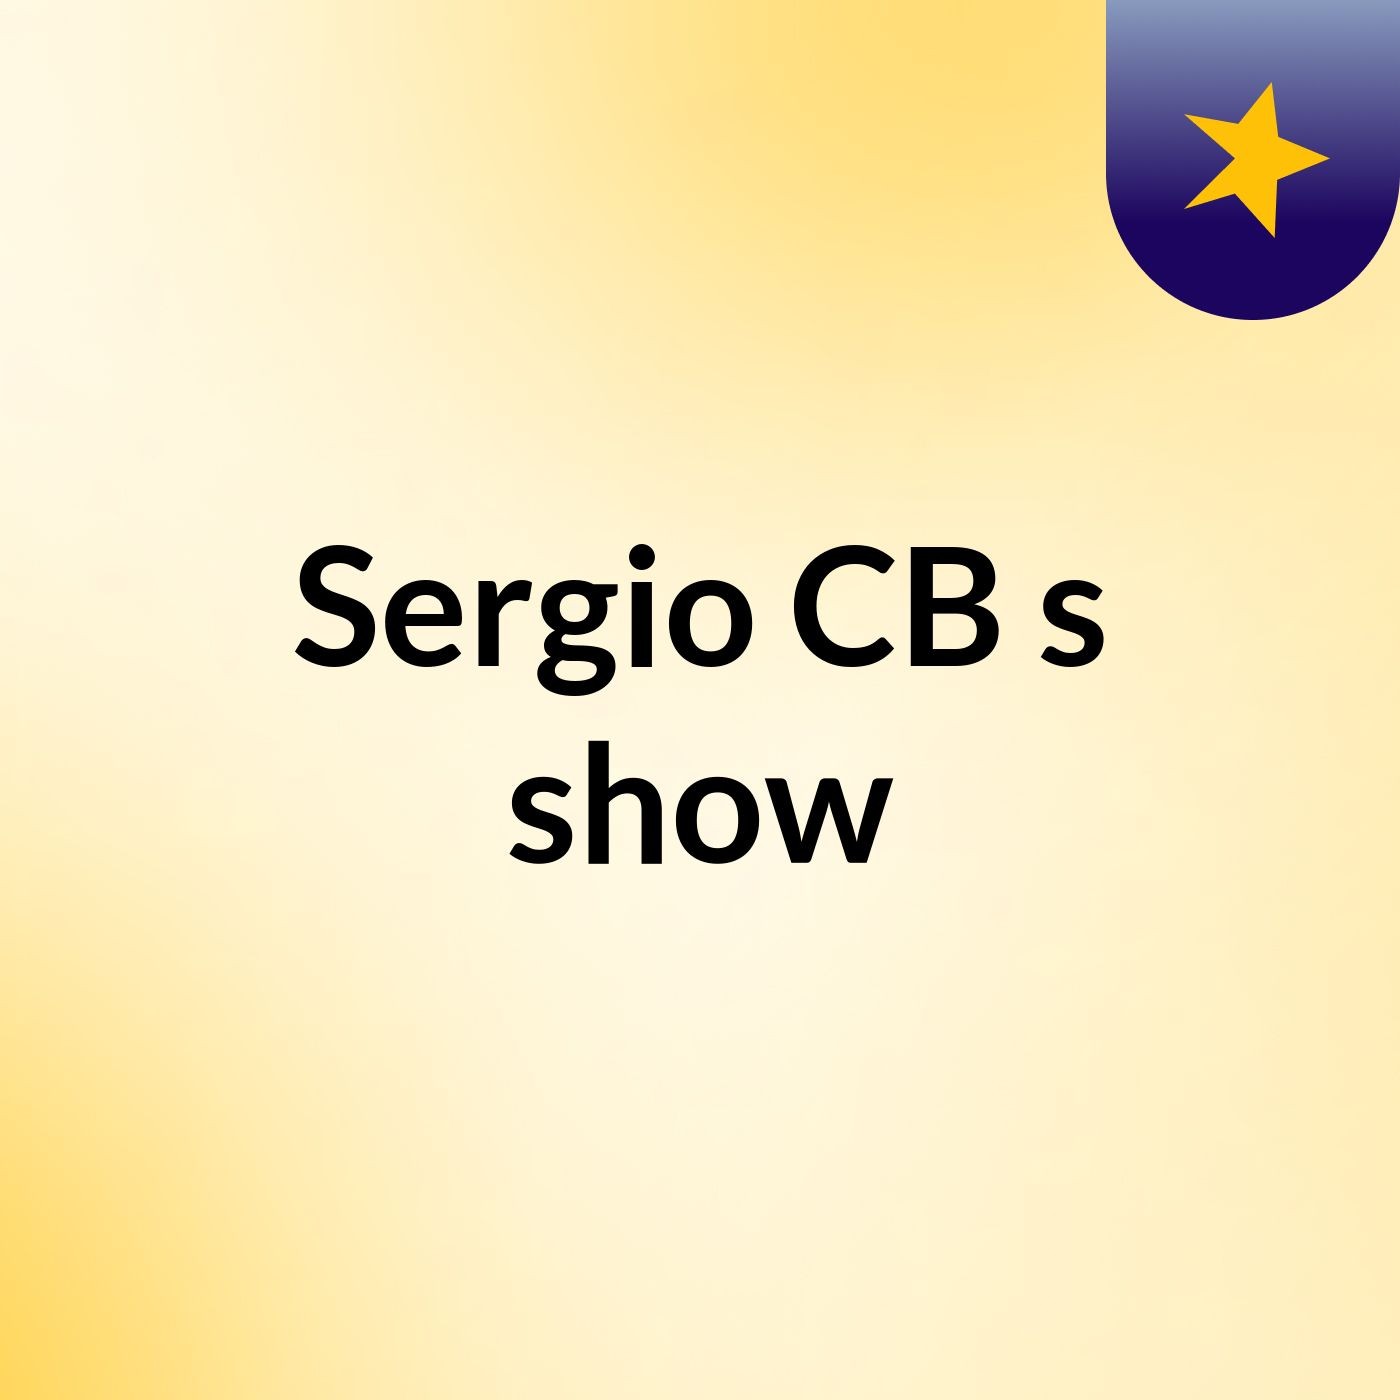 Sergio CB's show